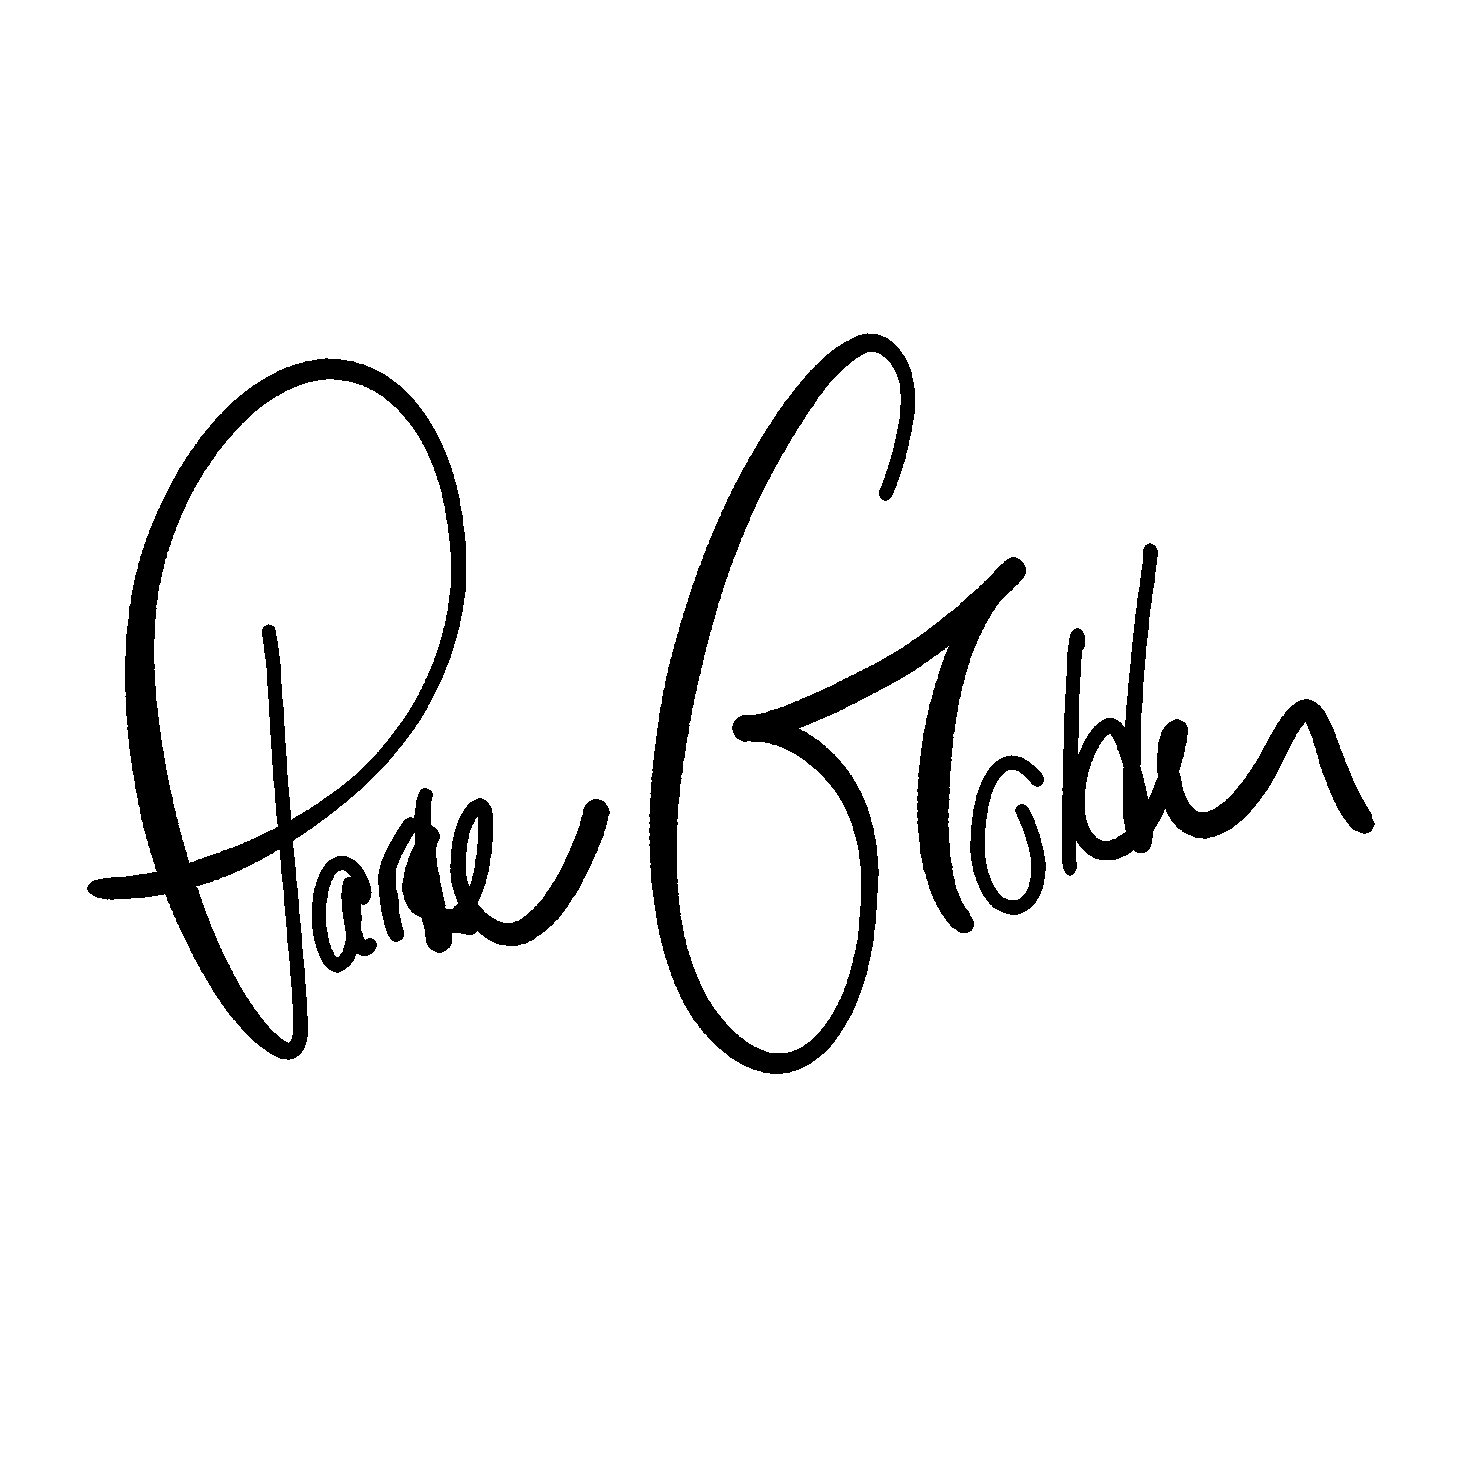 Parker Golden